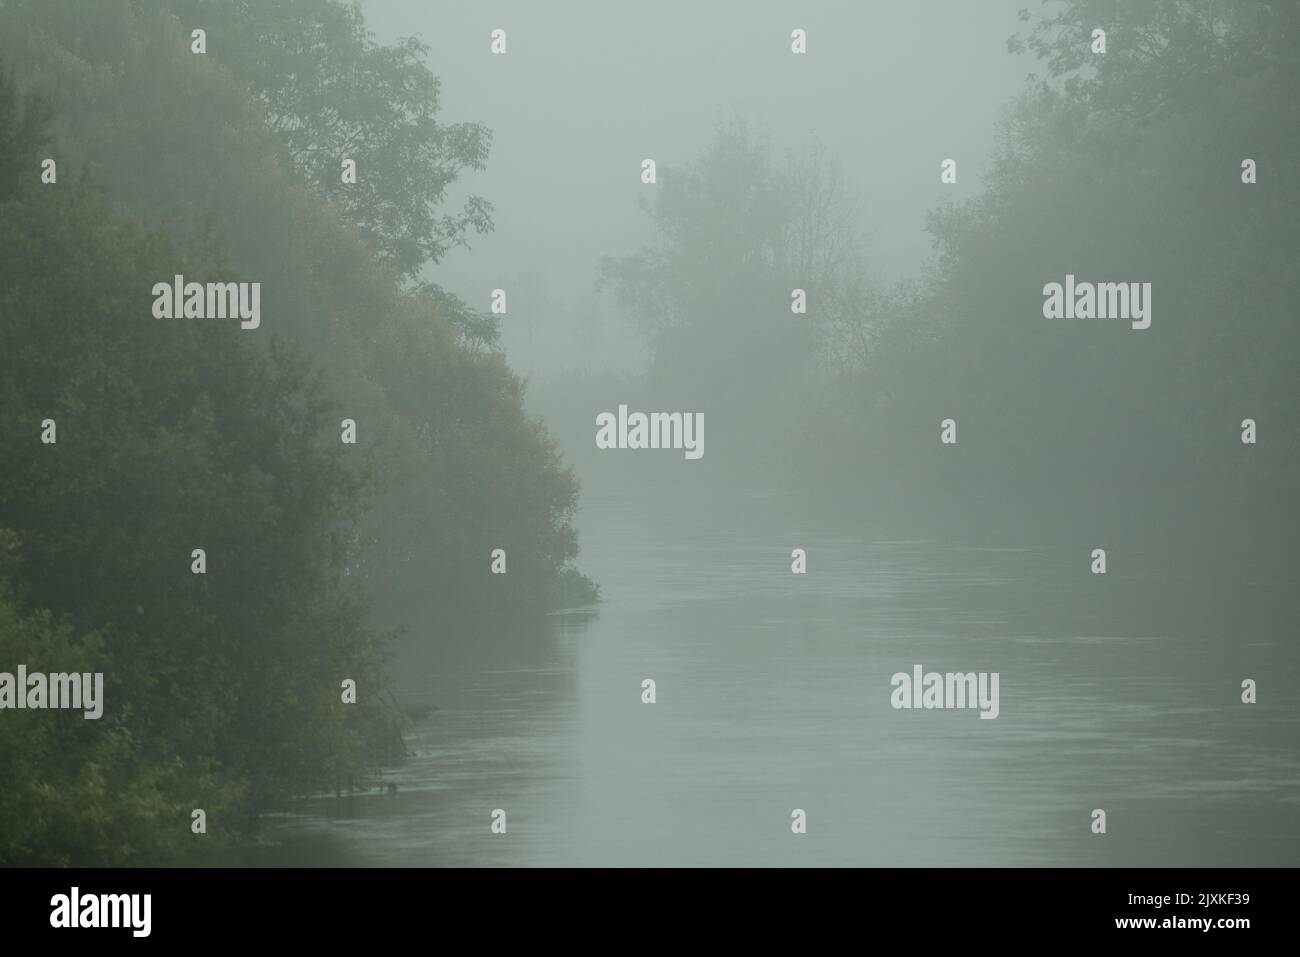 Sombre paesaggio autunno scena con fiume, nebbia, alberi grigi e verde scuro. Foto Stock